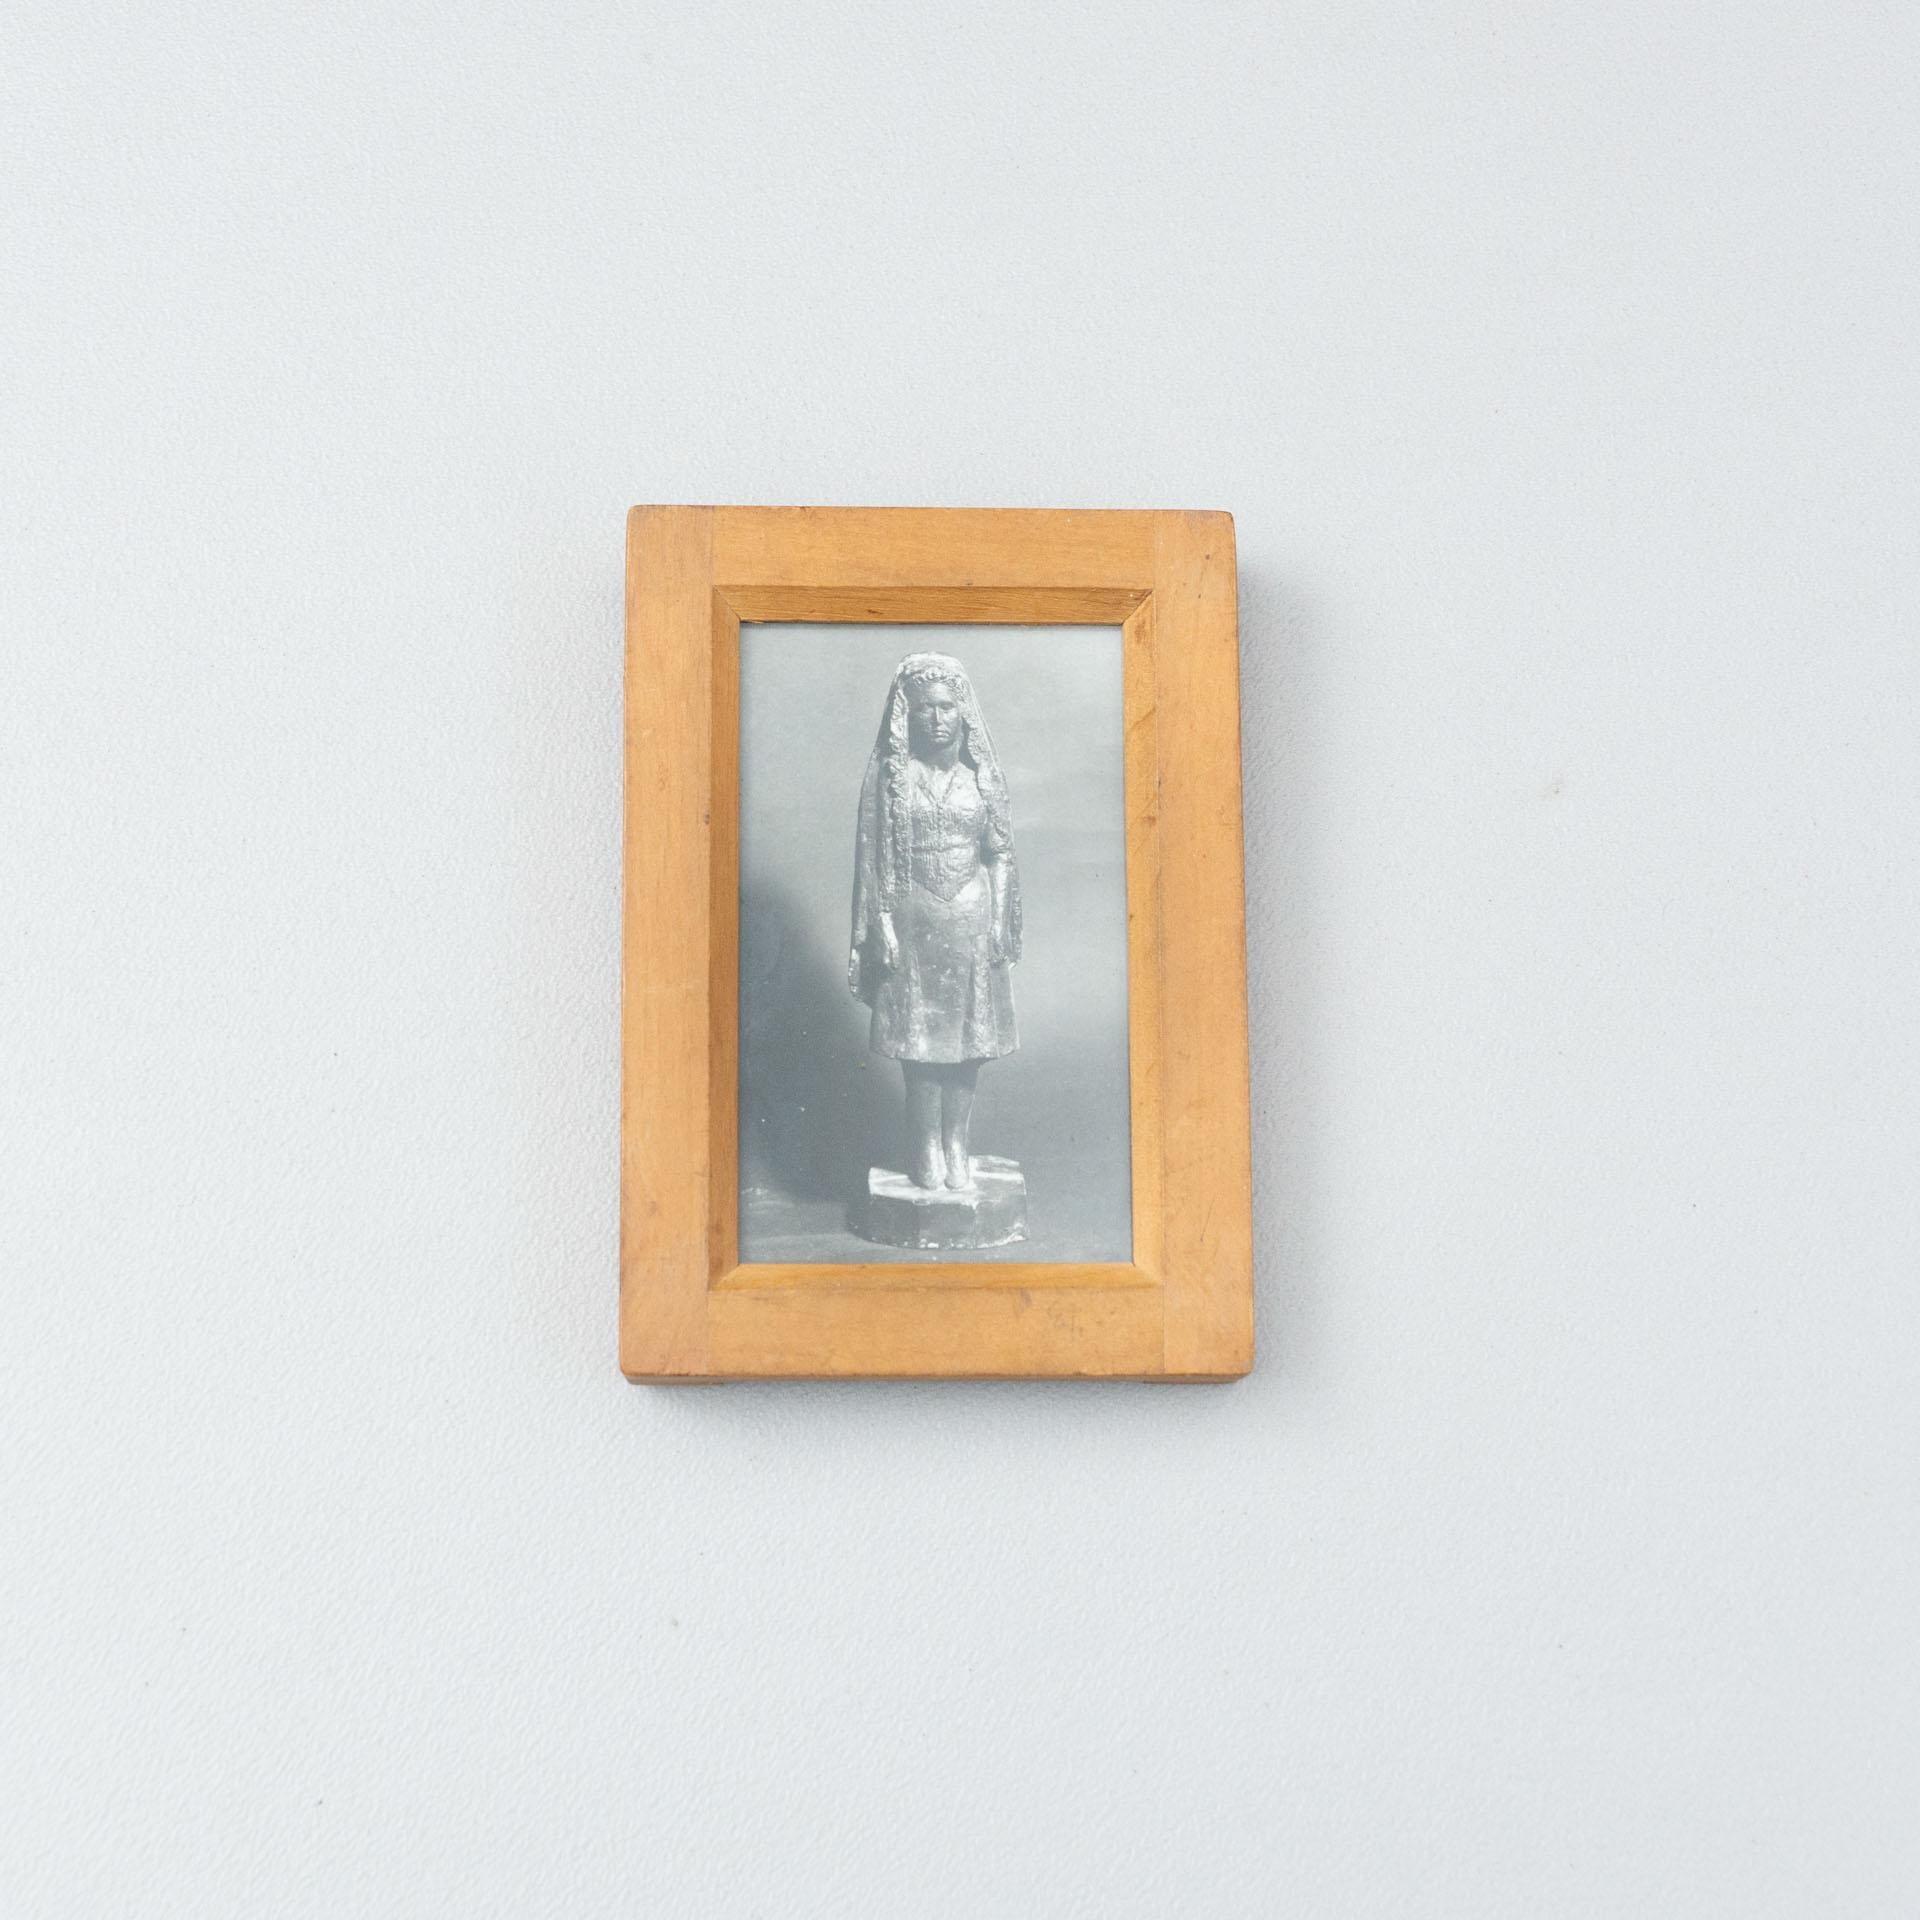 Photographies d'archives de sculptures de Manolo Hugué.
Imprimé, vers 1960.
Cadre en bois inclus.


Matériaux :
Tirage au gélatino-bromure d'argent

Dimensions :
D 2 cm x L 10,6 cm x H 15 cm

Nous offrons une livraison gratuite dans le